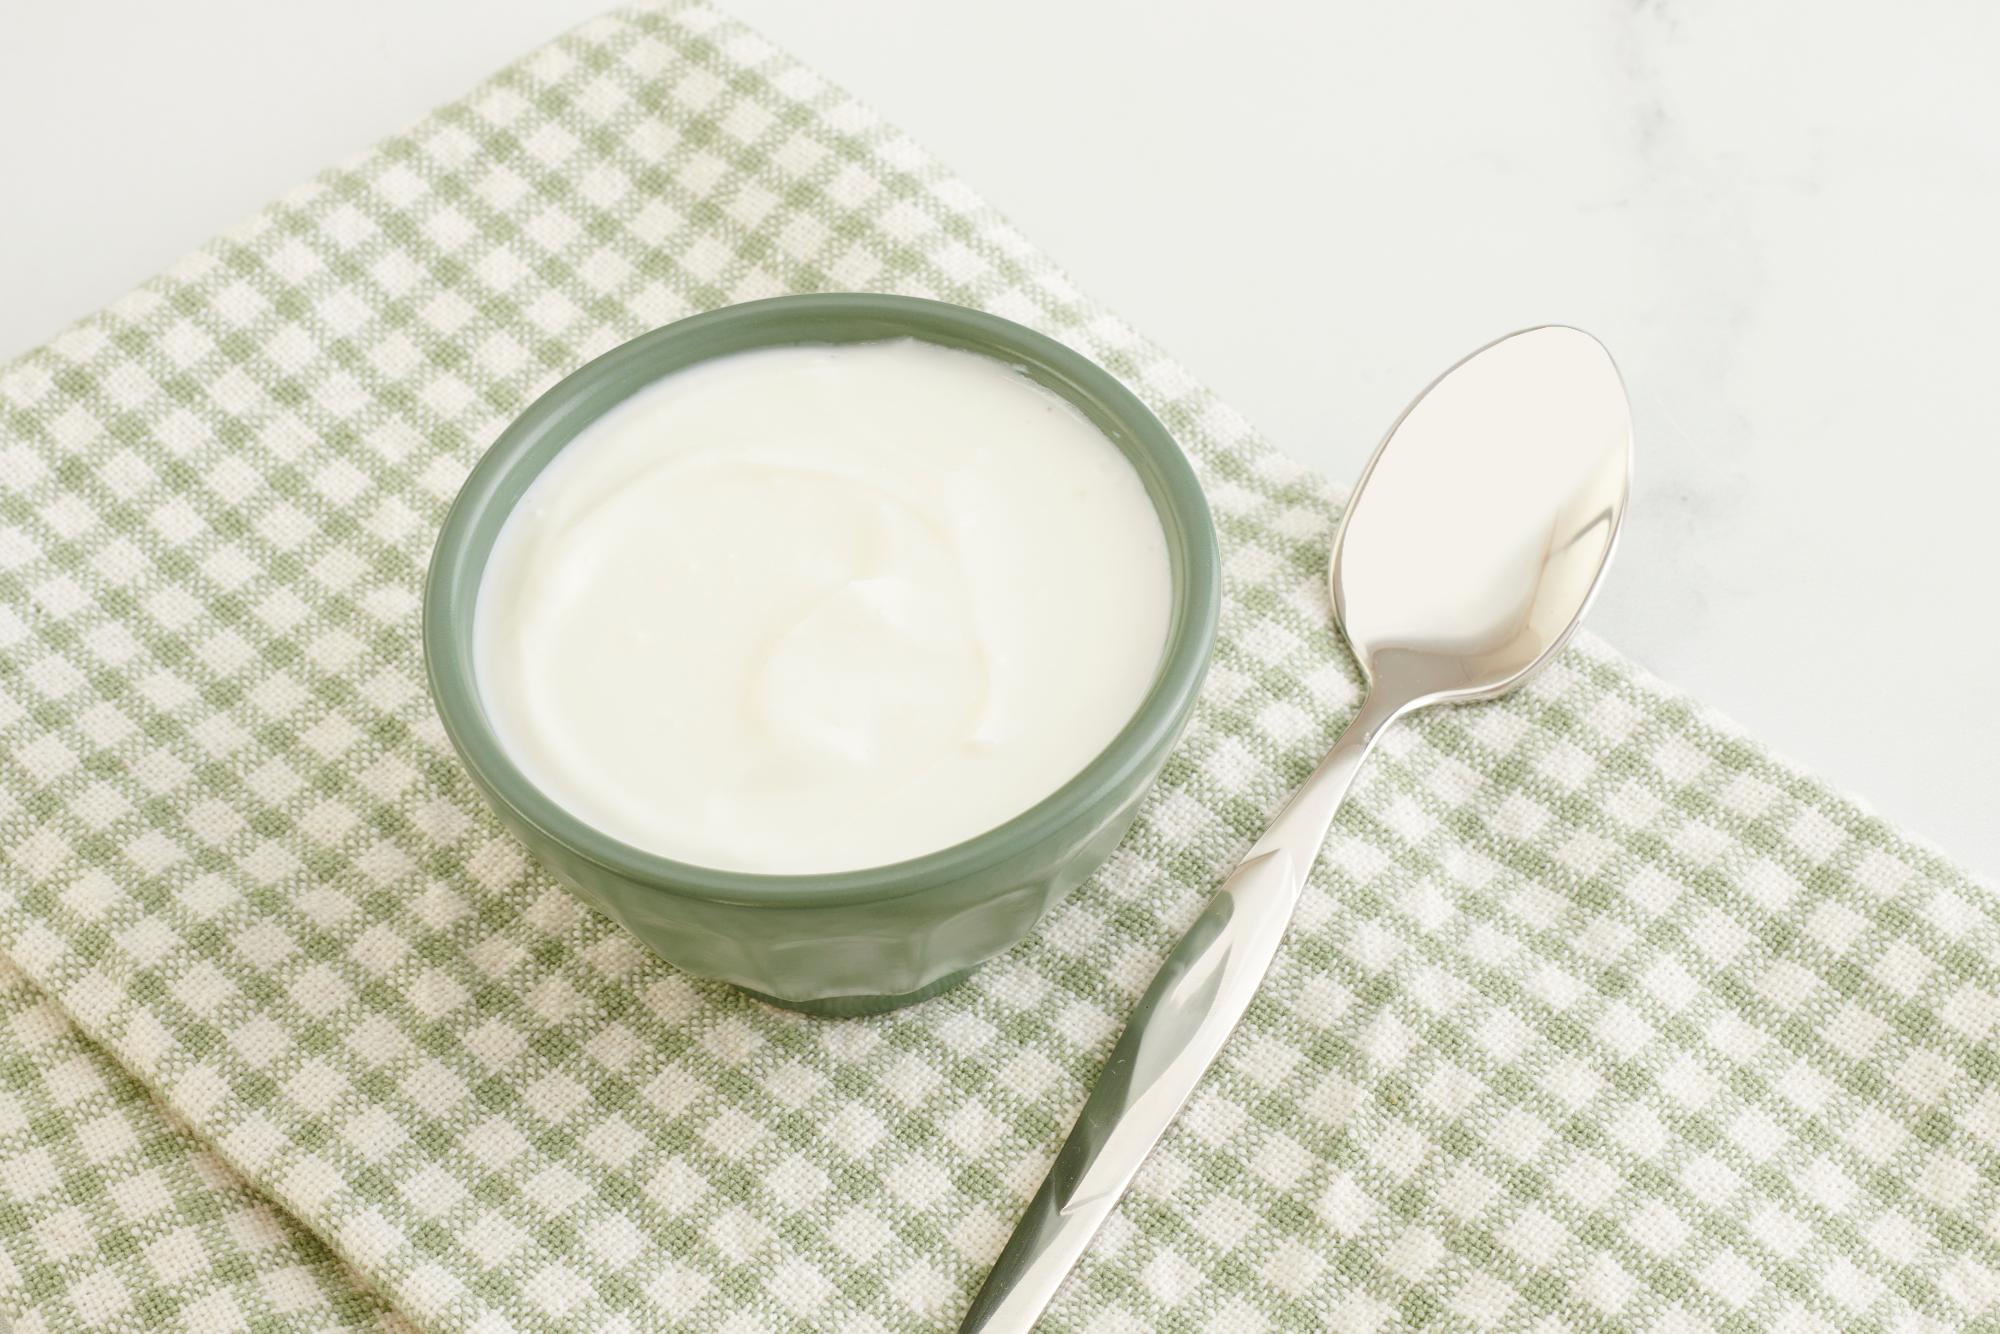 Greek yogurt in a bowl.